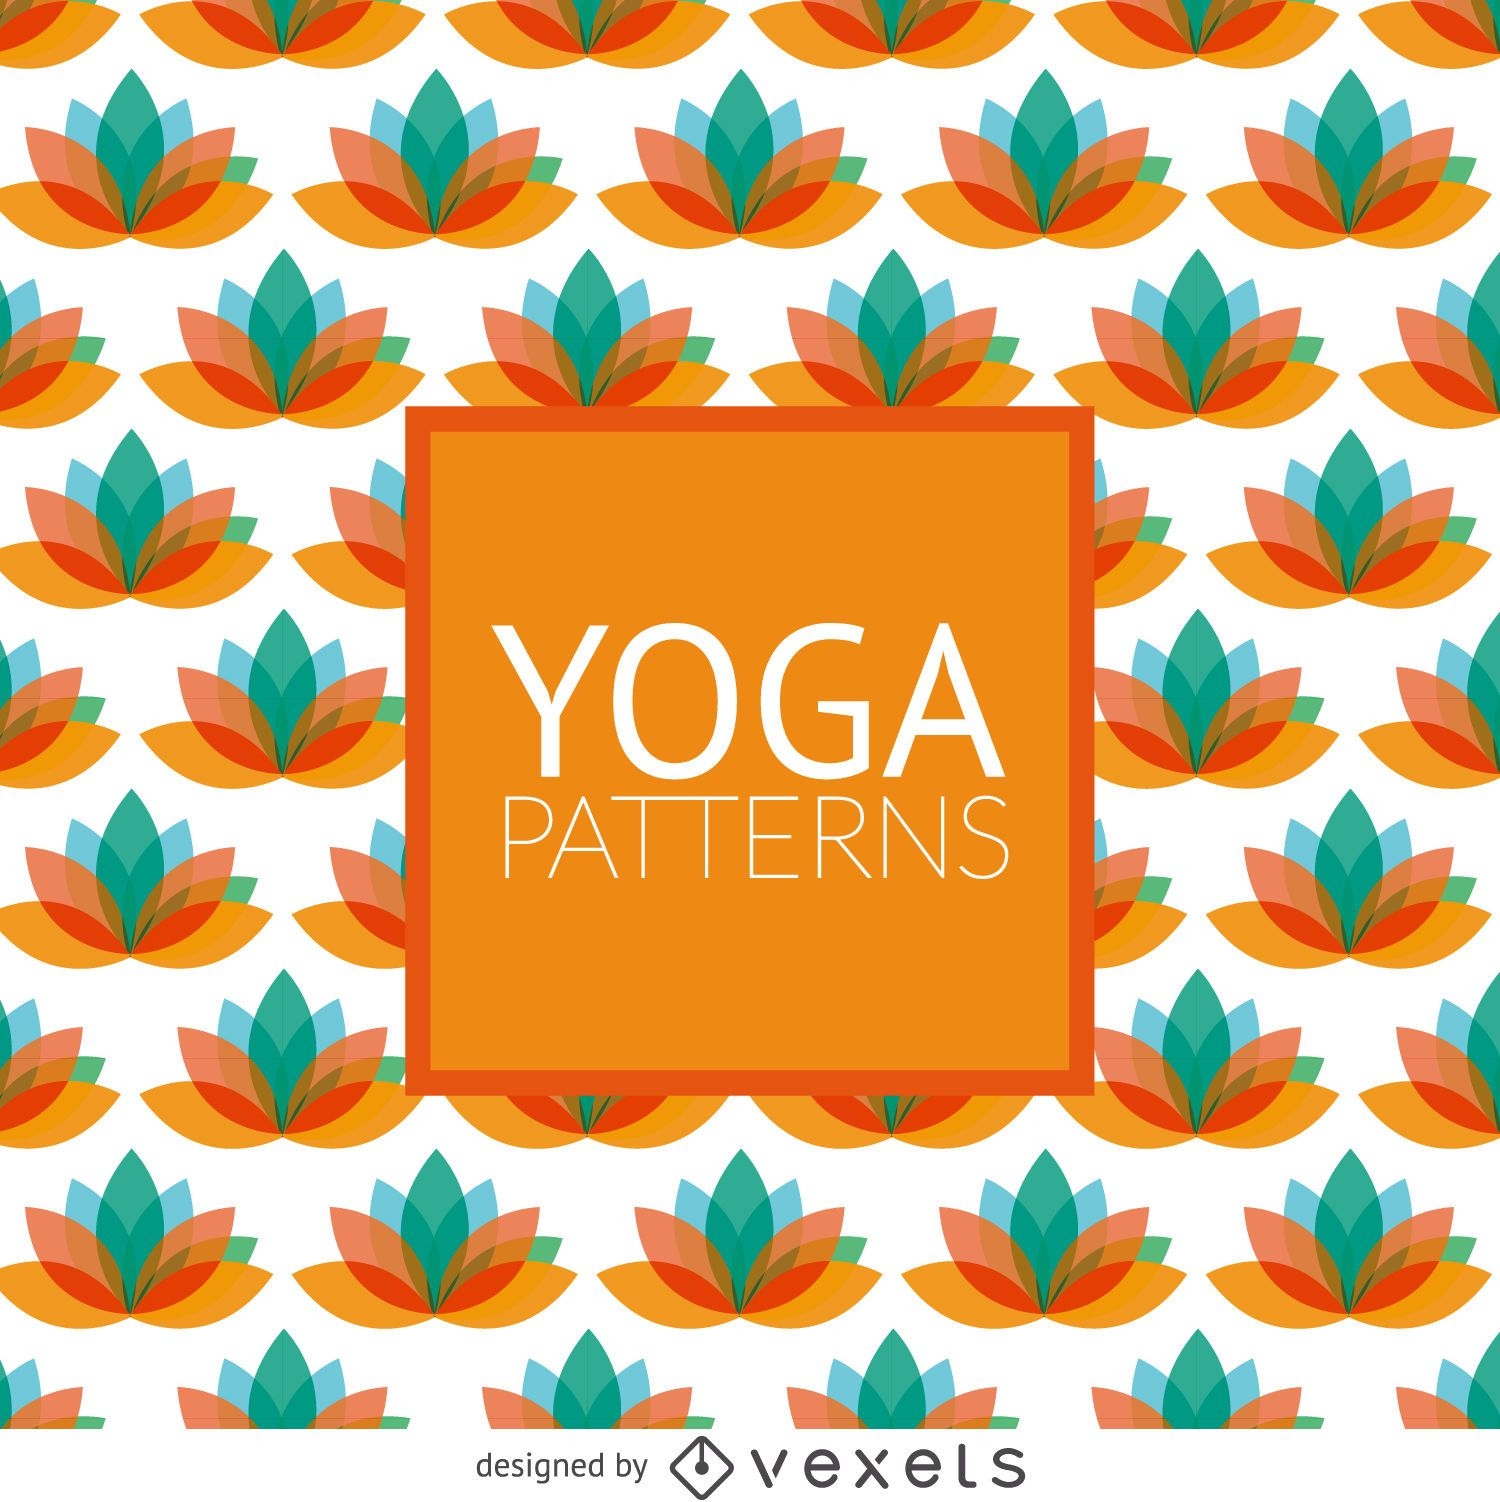 Lotus yoga pattern